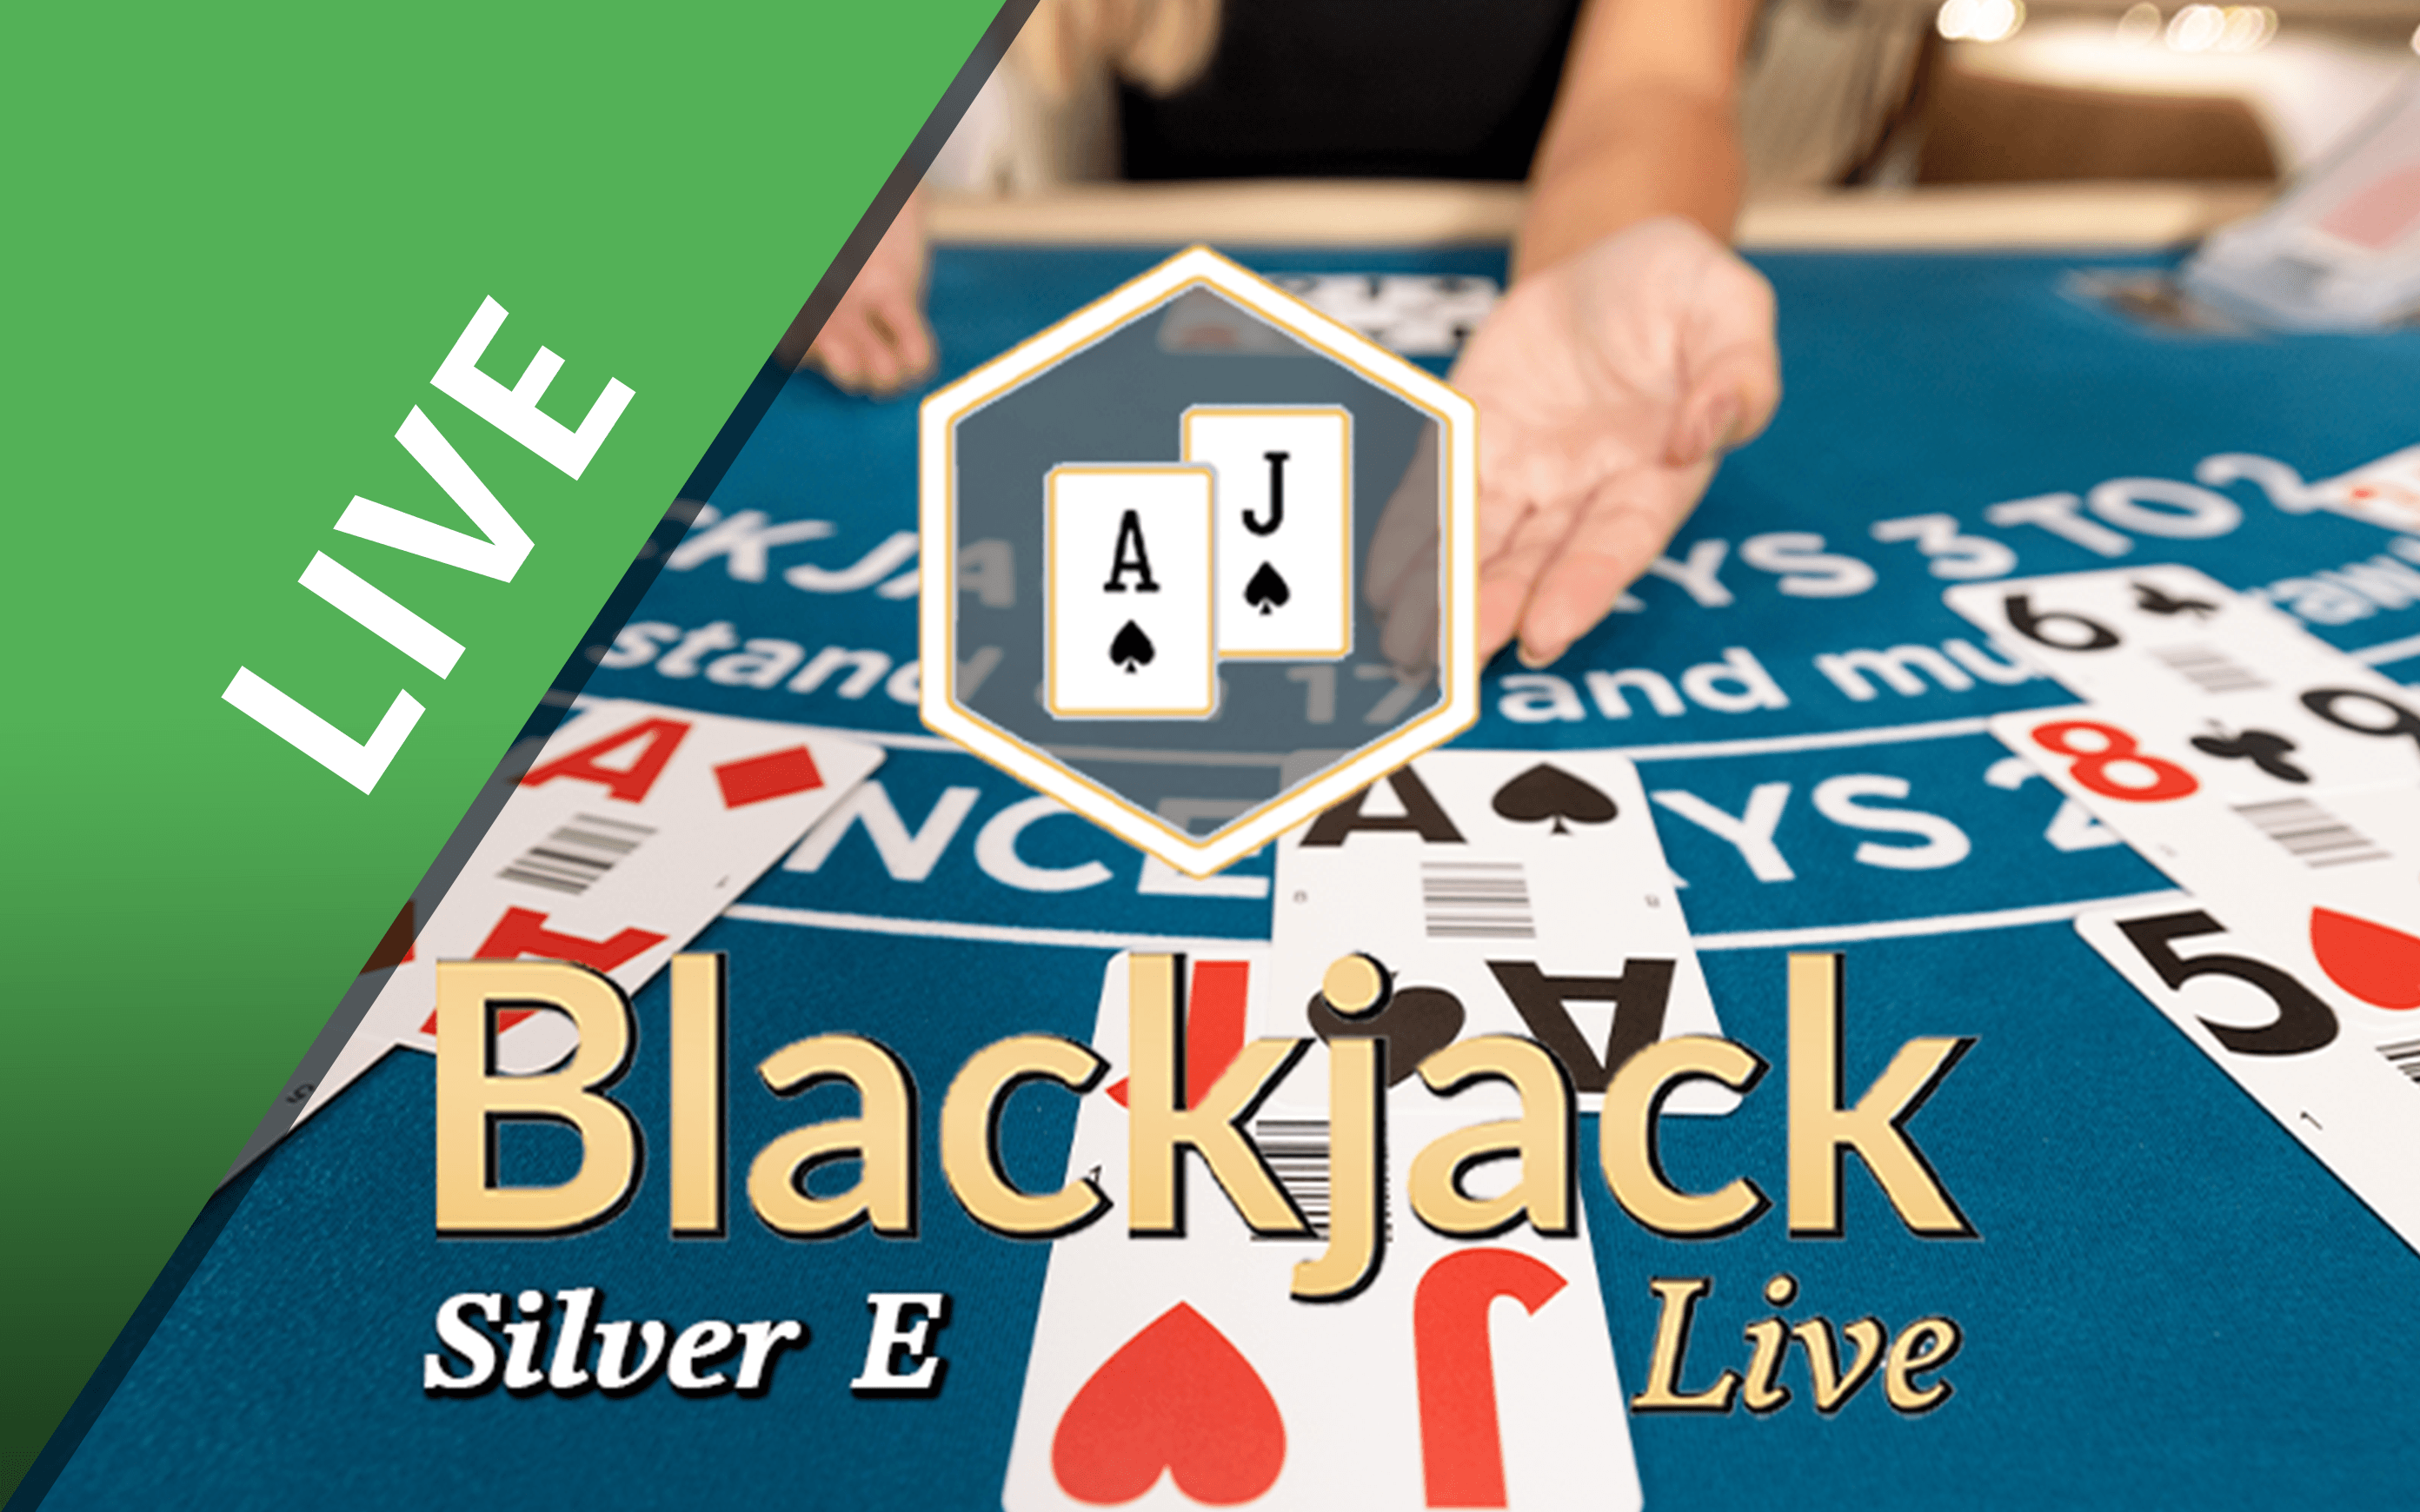 Chơi Blackjack Silver E trên sòng bạc trực tuyến Starcasino.be